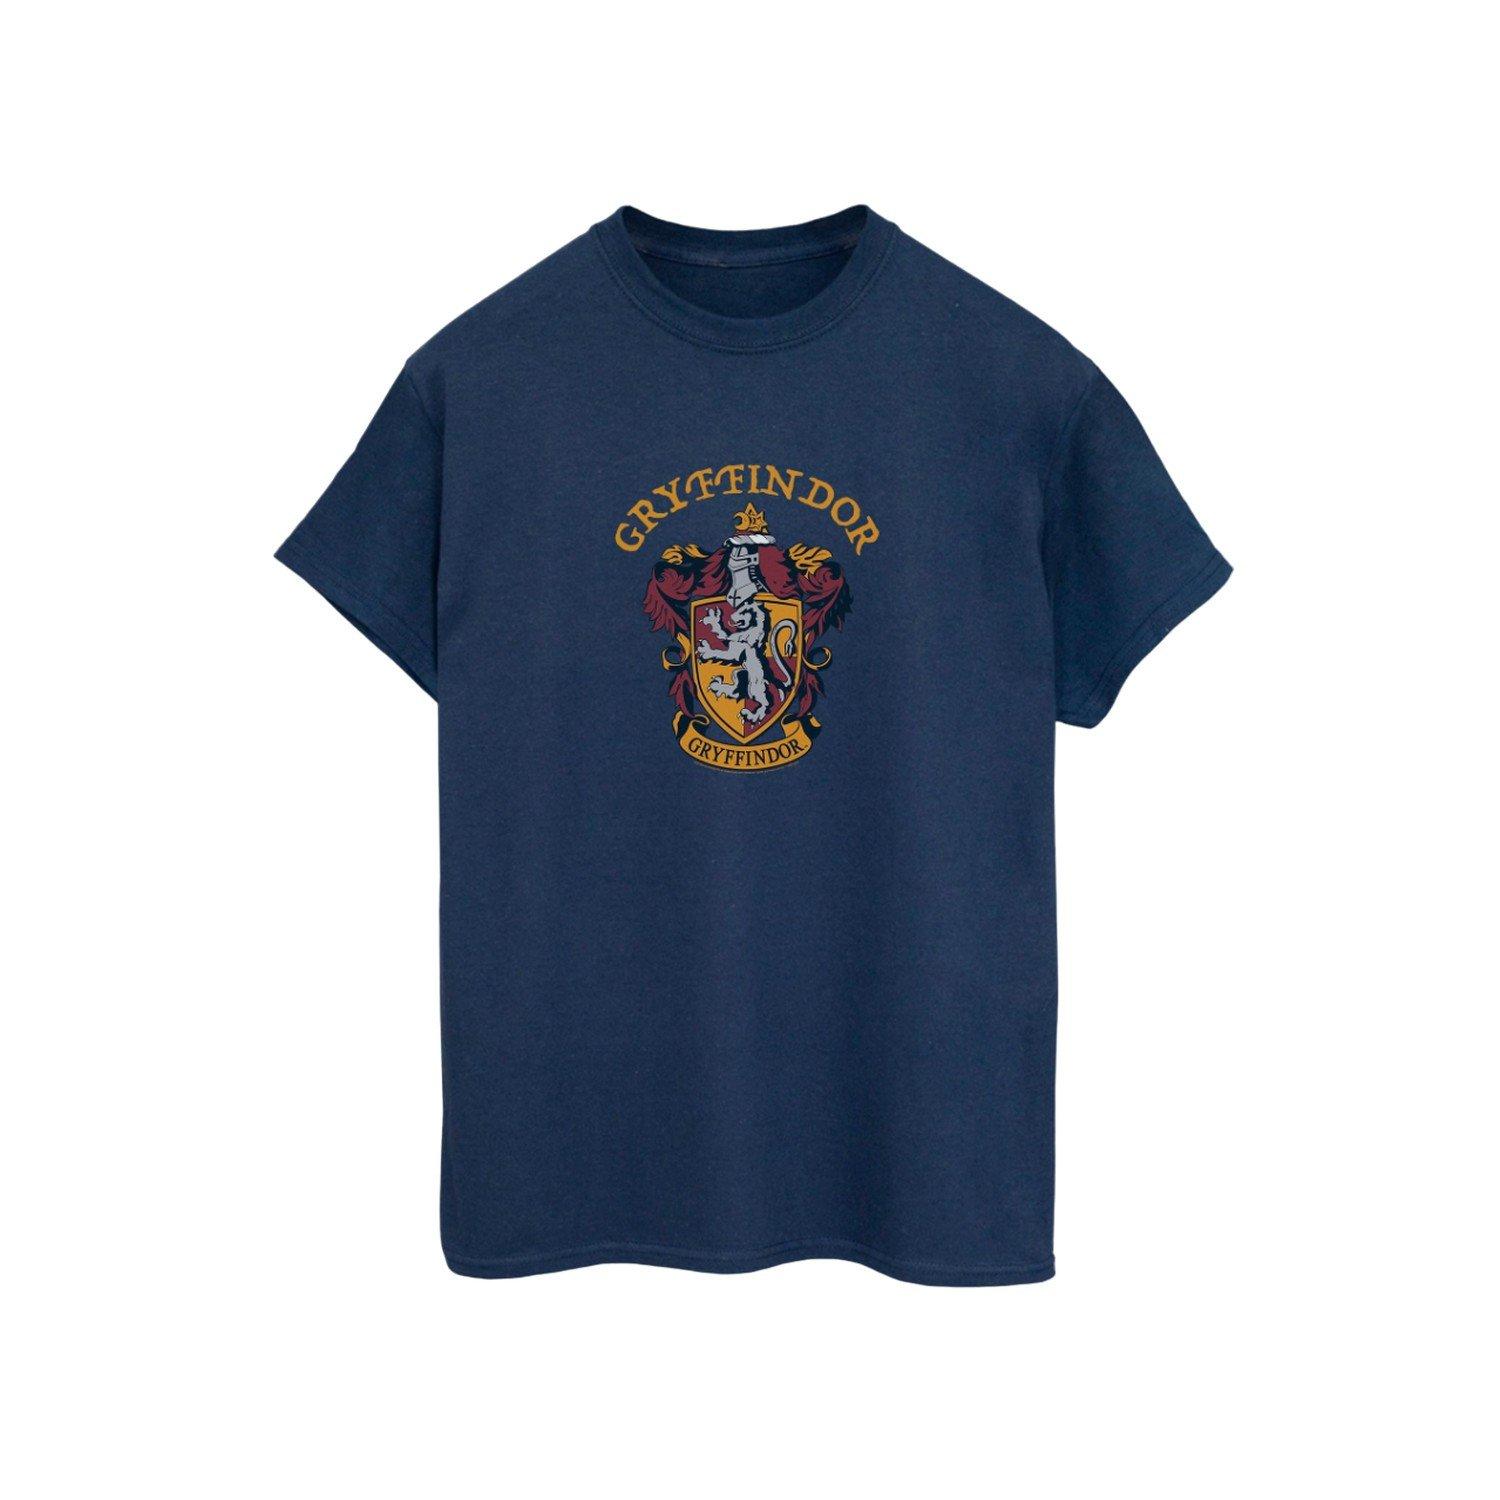 Tshirt Herren Marine 3XL von Harry Potter